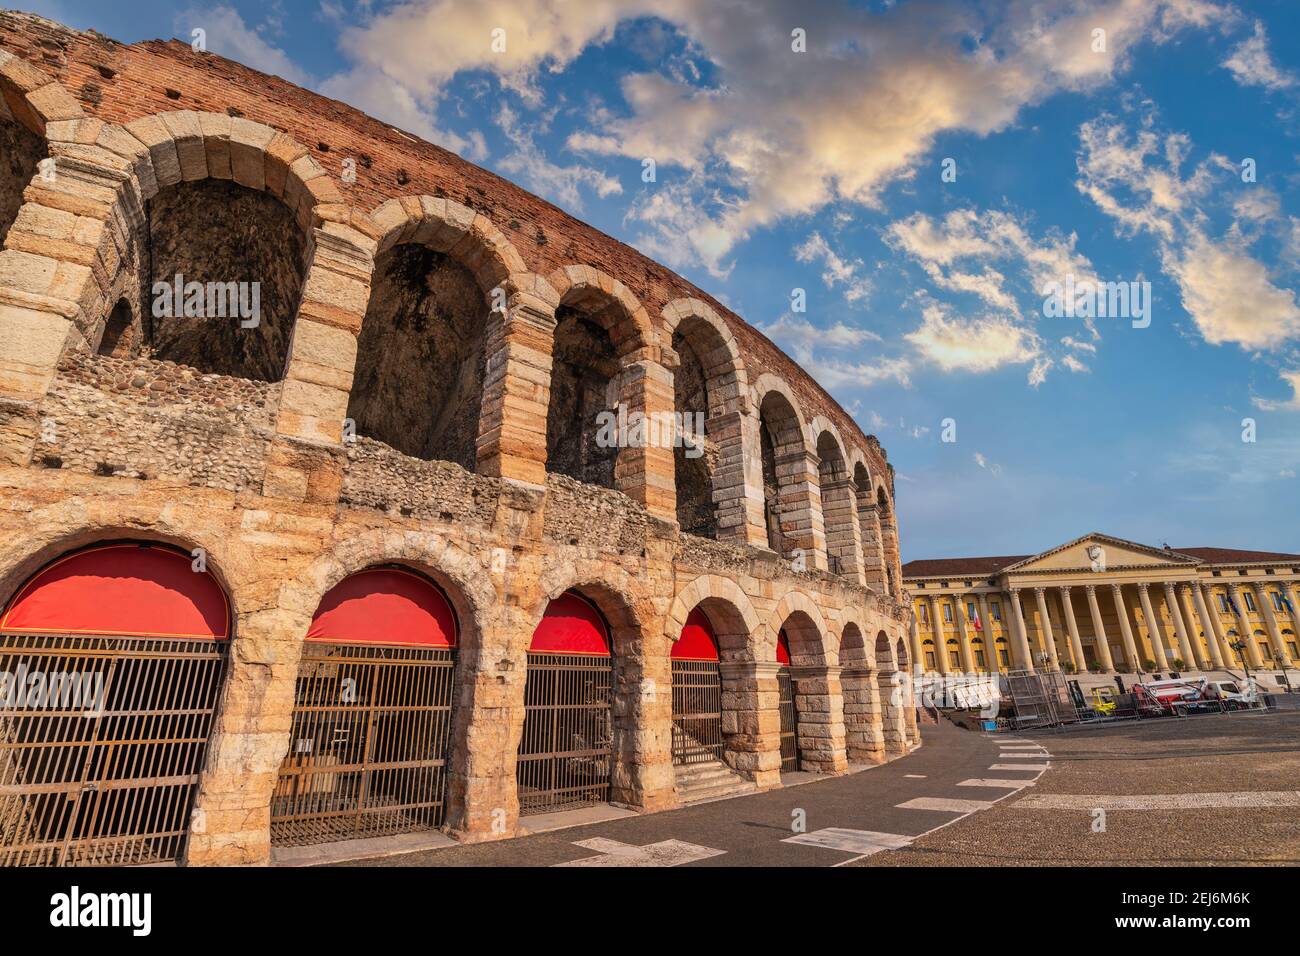 Vérone Italie, vue d'ensemble de la ville à l'Arena de Vérone (Colisée) Banque D'Images